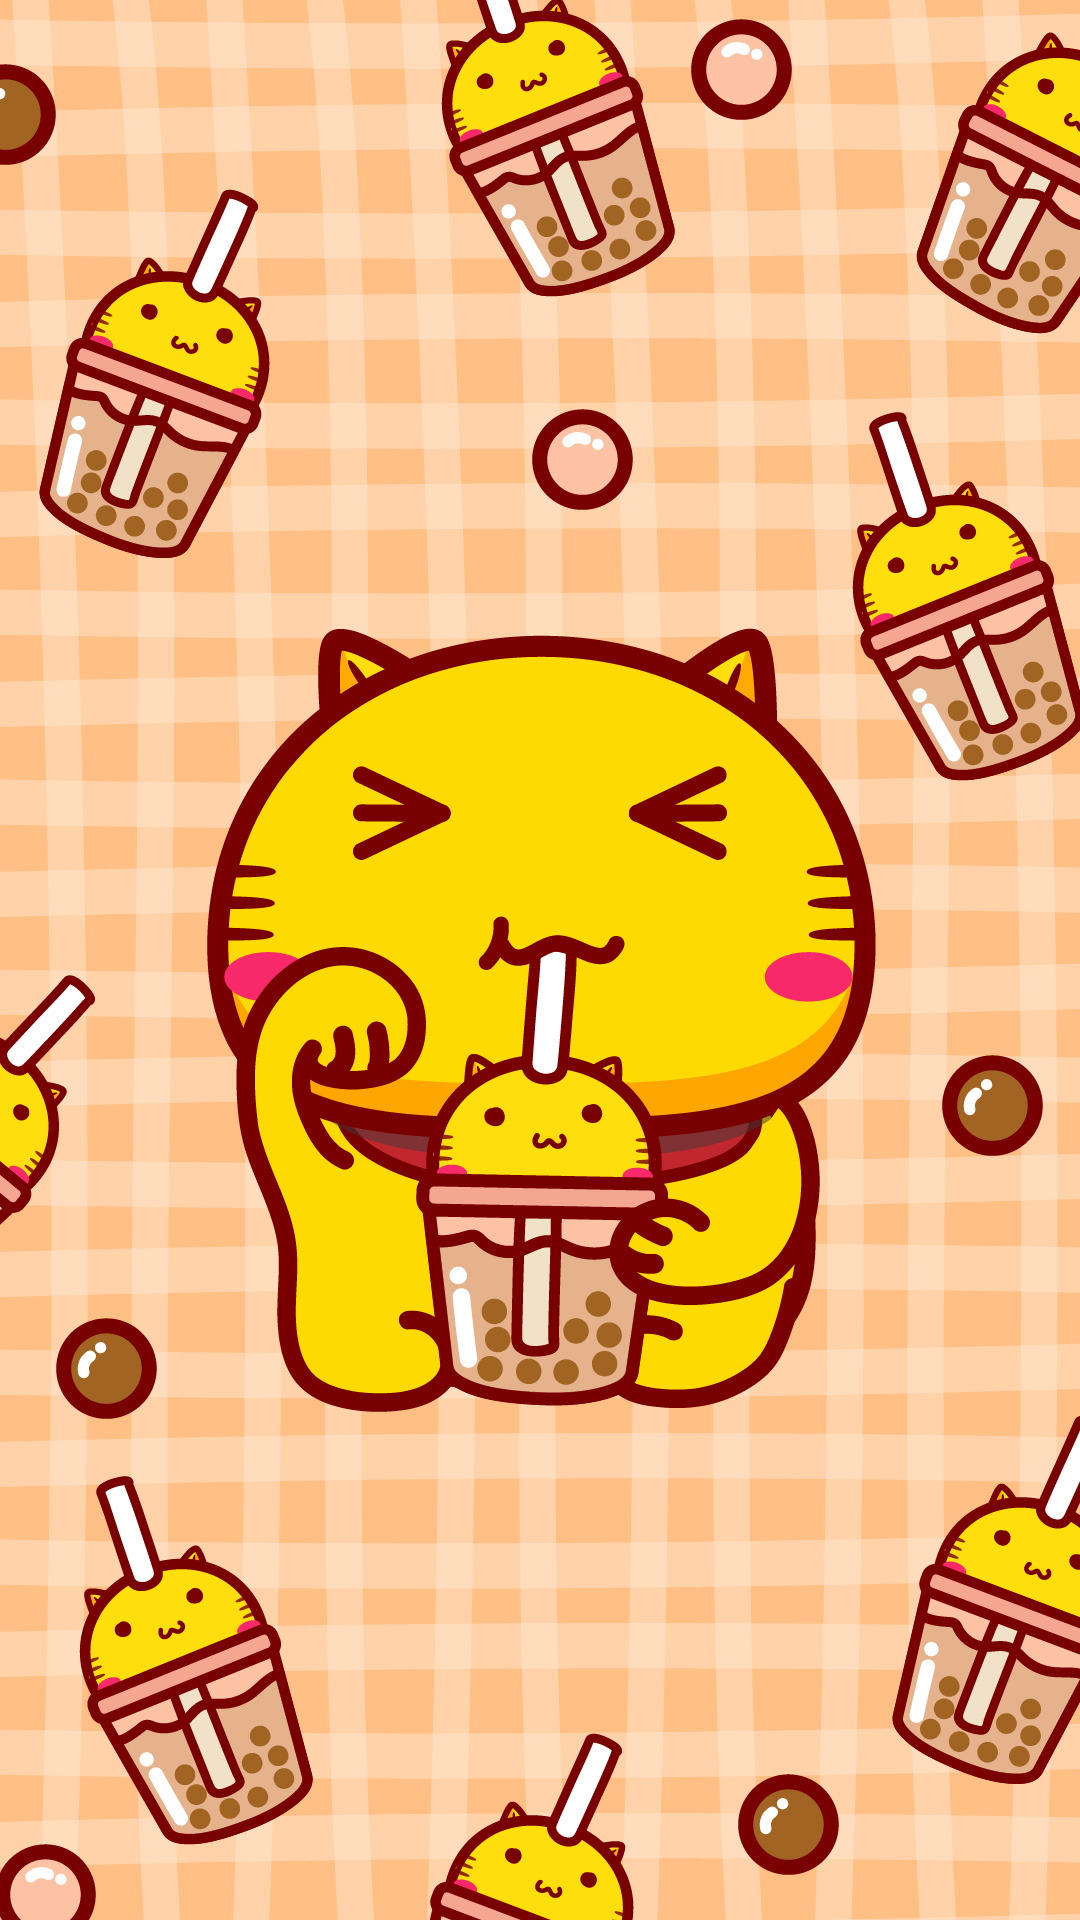 哈咪猫爱奶茶